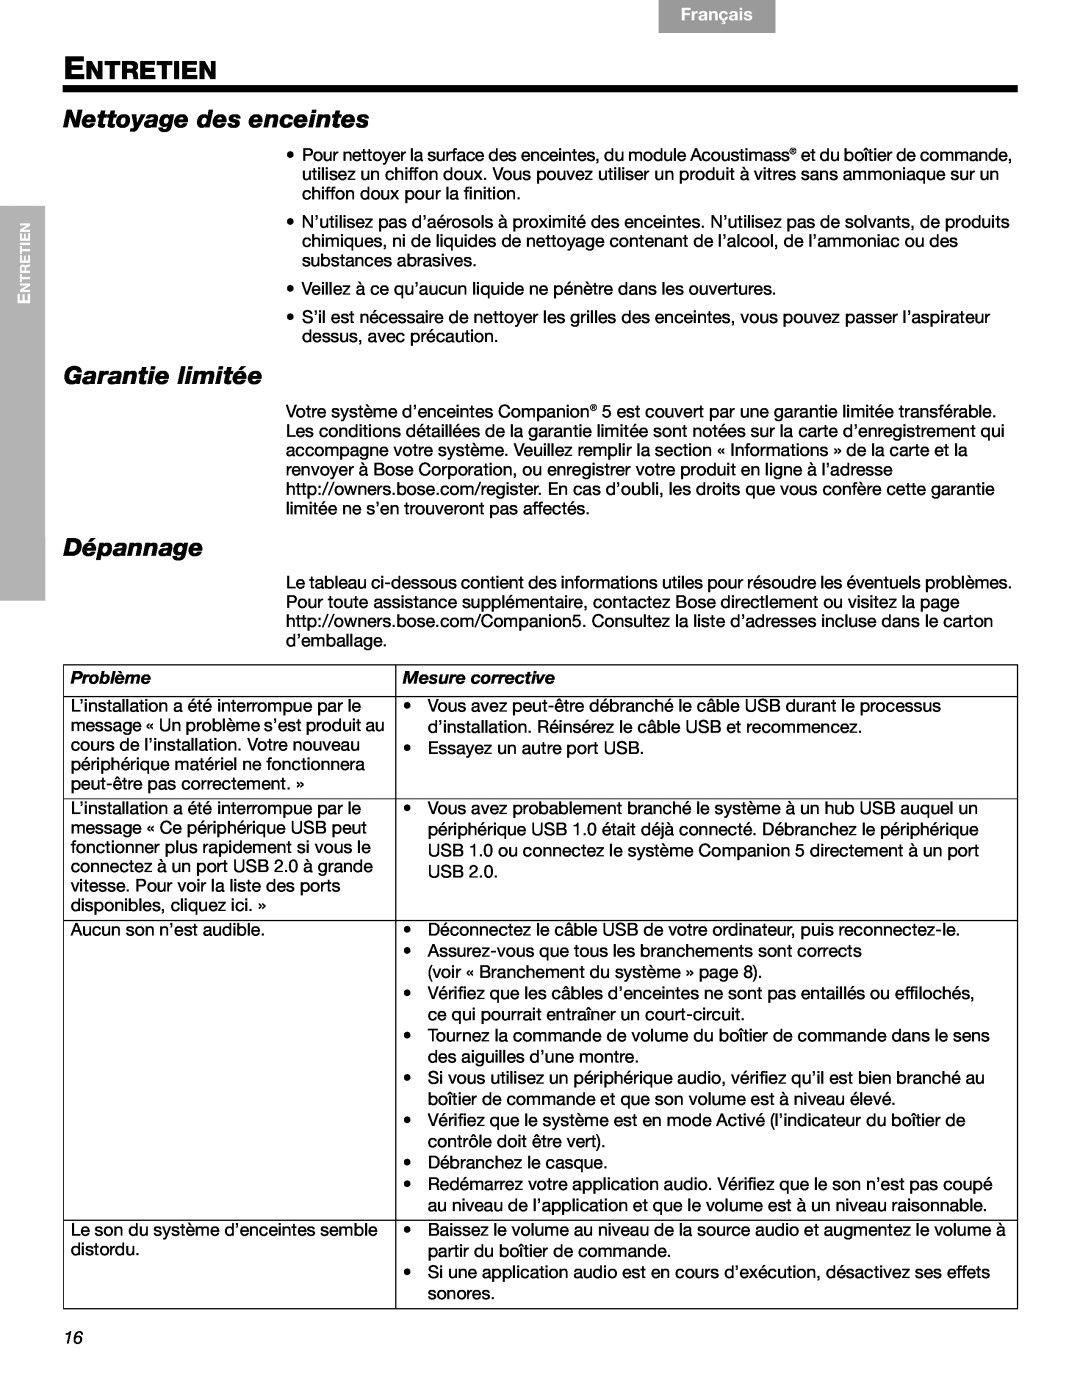 Bose 40326 manual Entretien, Nettoyage des enceintes, Garantie limitée, Dépannage, Français, Español, English, Problème 